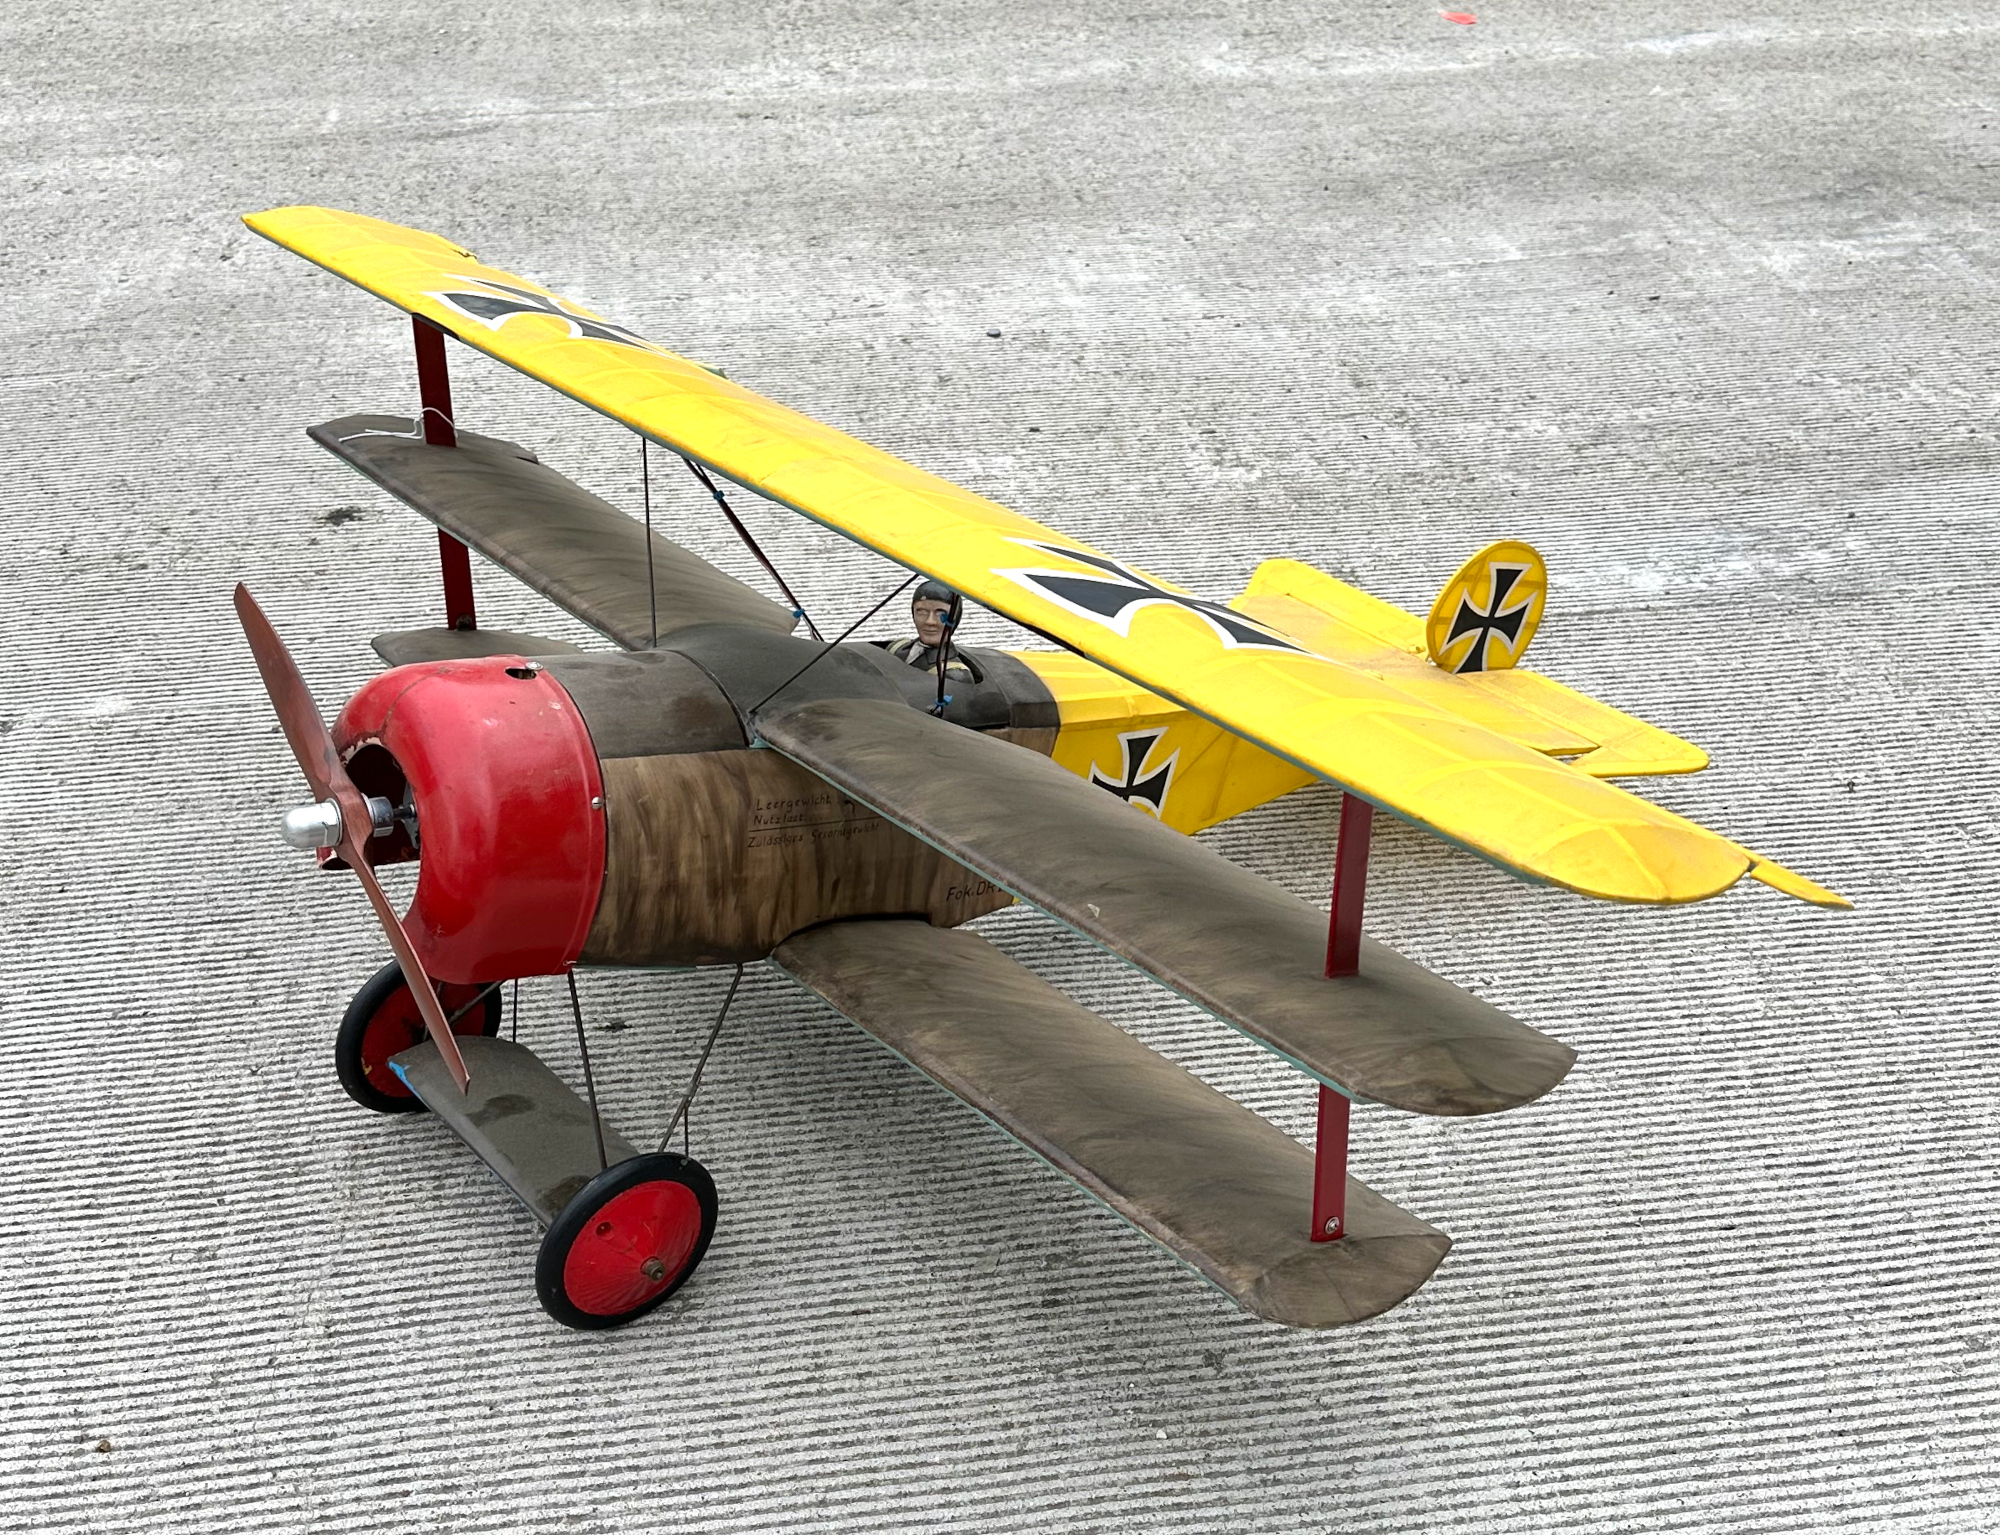 Aviation interest; a scale model of a WWI Fokker bi-plane, wing span 125cm.